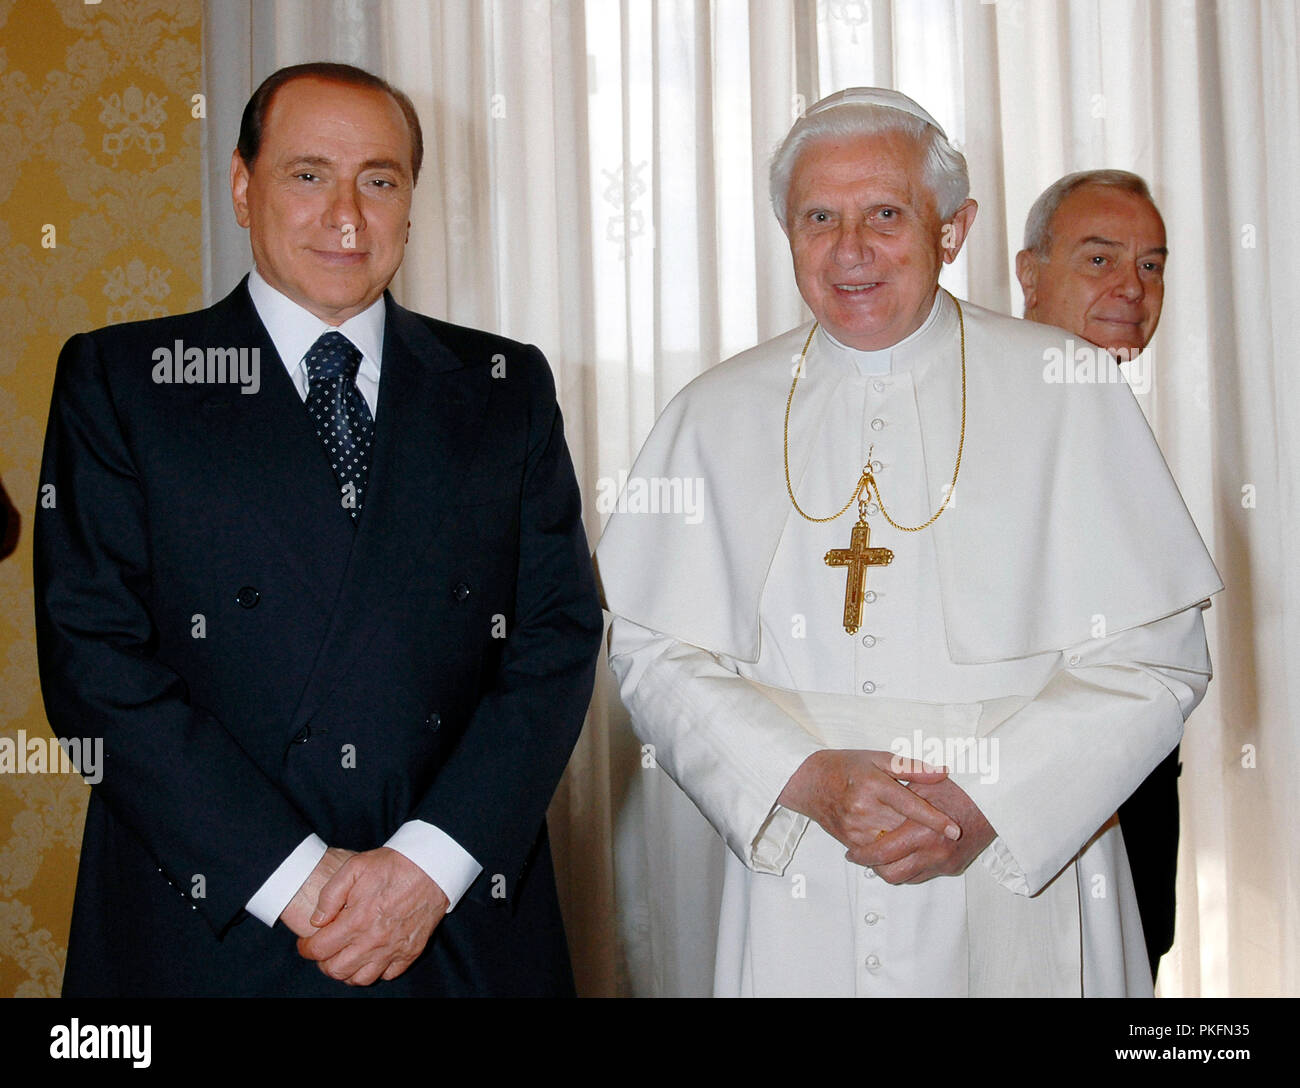 Vatican City Il Presidente del Consiglio dei Ministri Silvio Berlusconi incontra Papa Benedetto XVI The Prime Minister Silvio Berlusconi meets Pope Benedict XVI Stock Photo